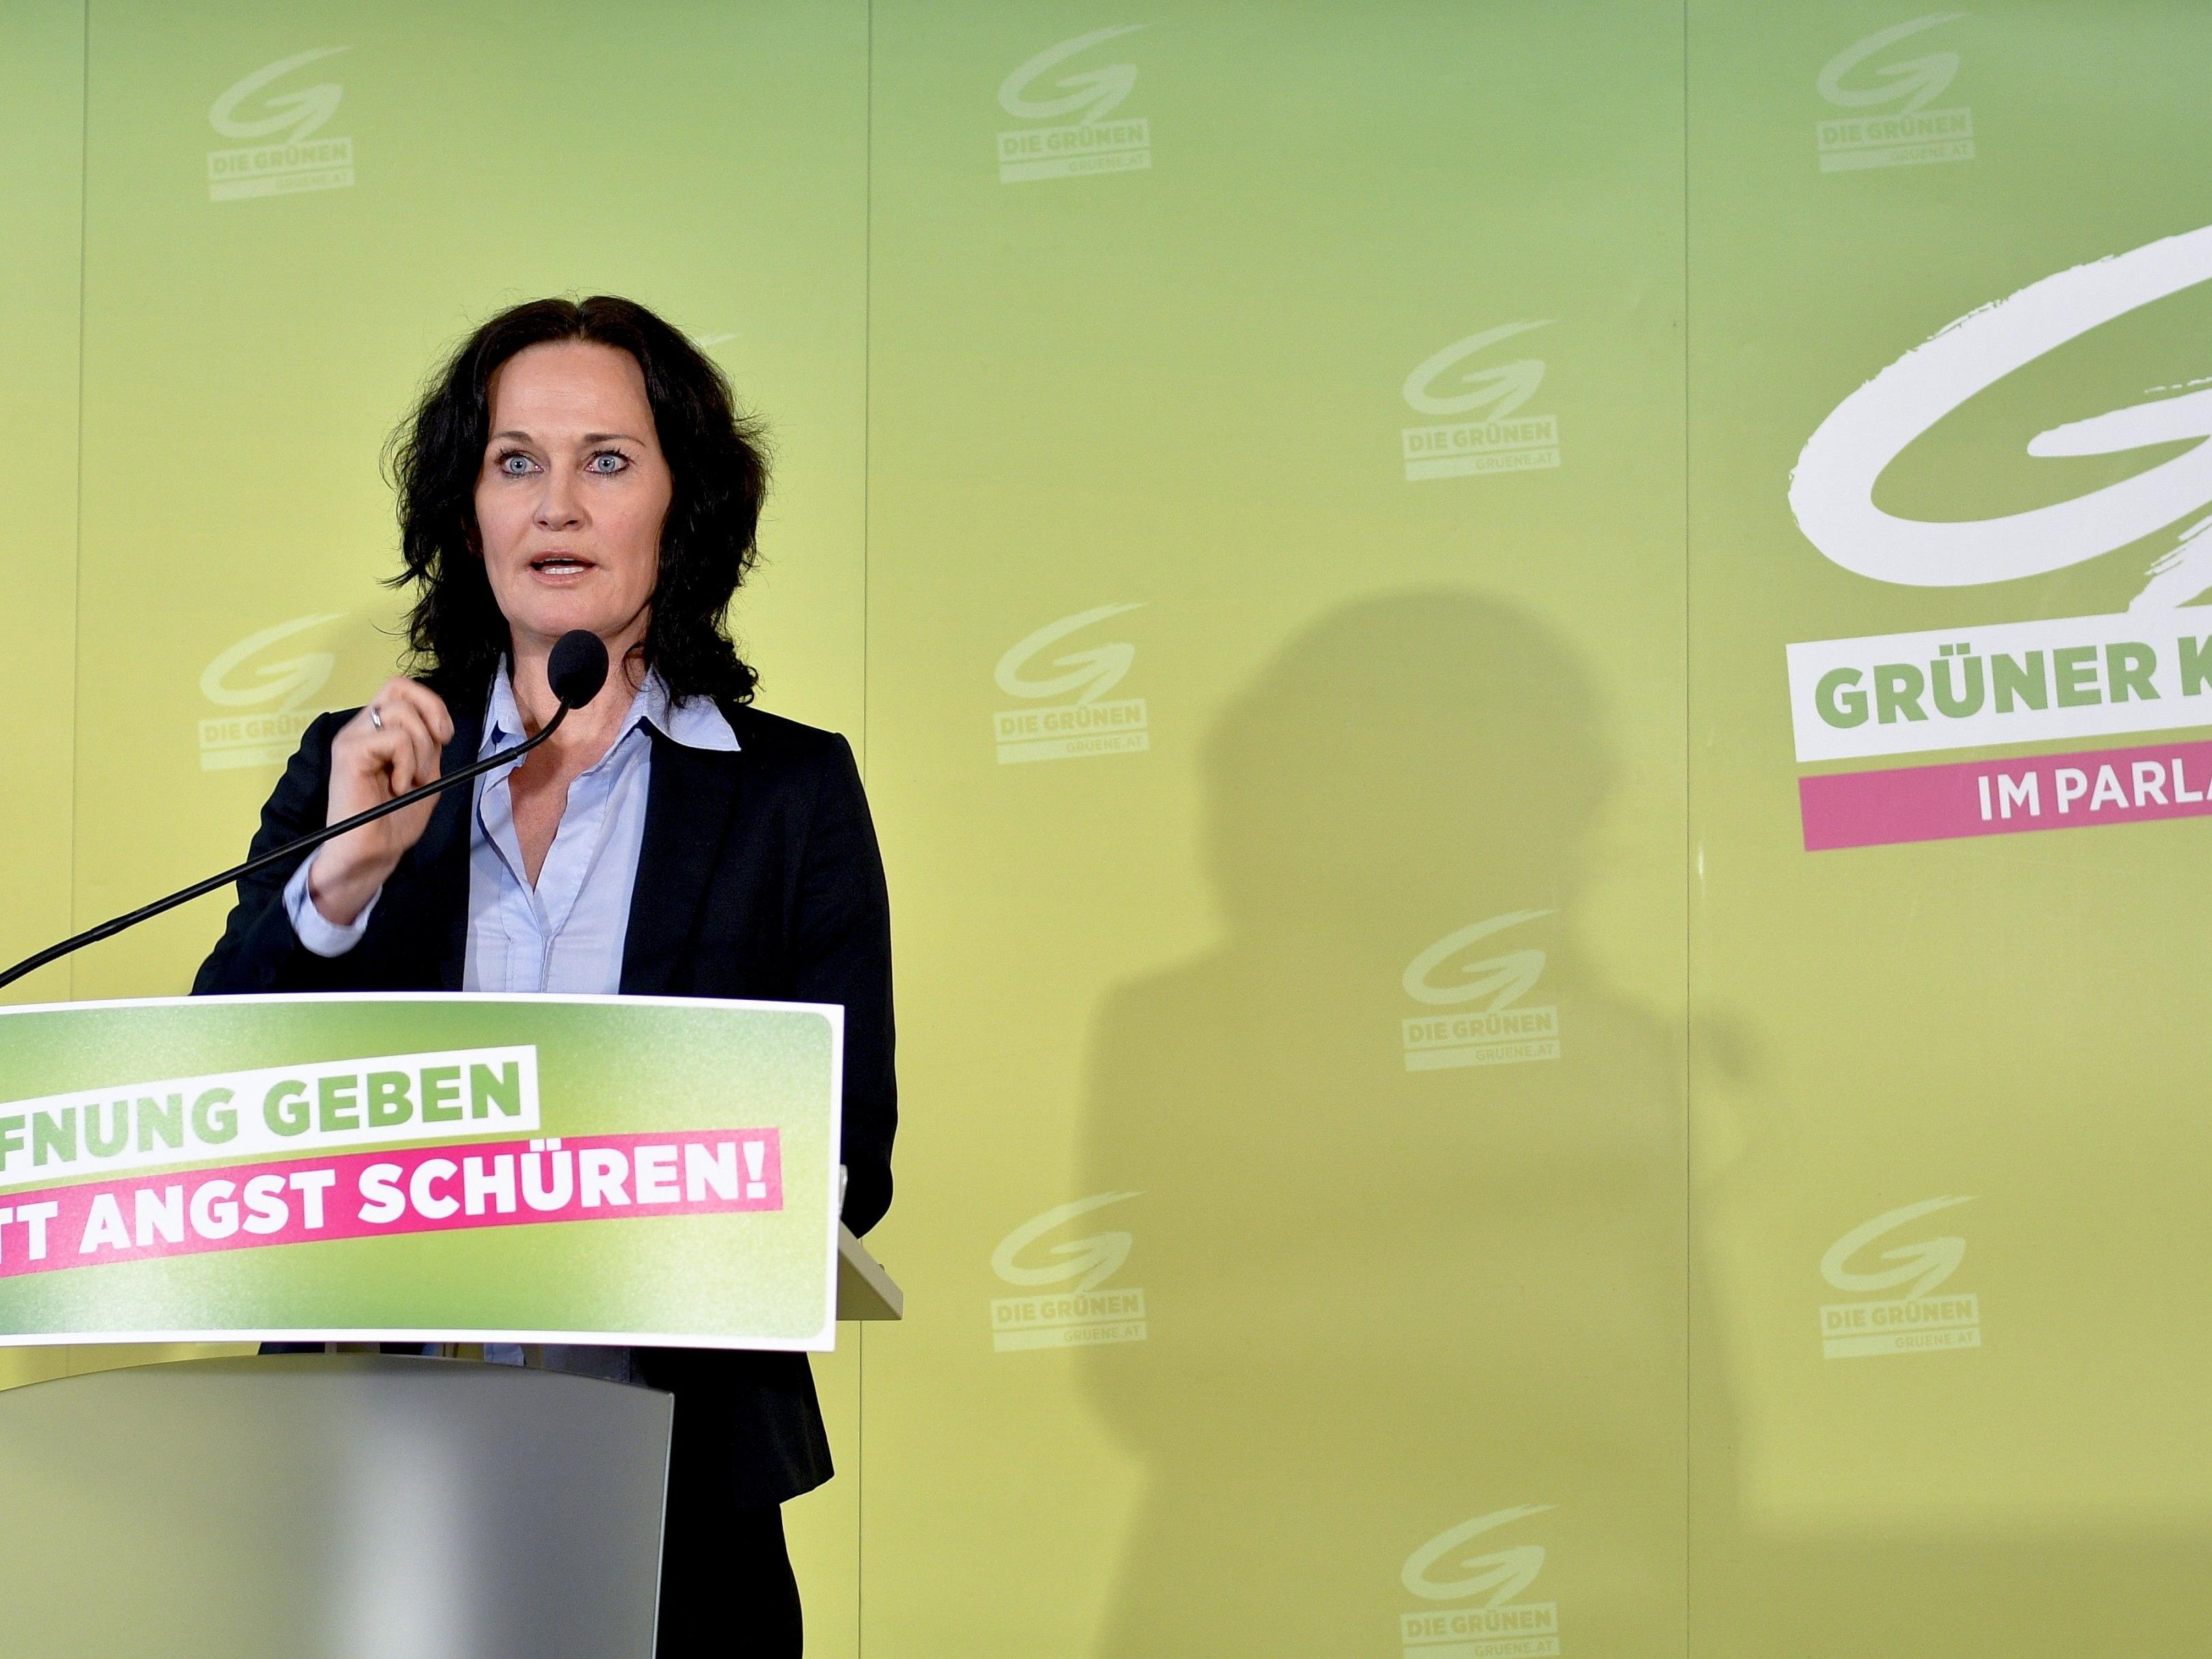 Die Jungen Grünen werfen der Bundespartei um Chefin Eva Glawischnig einen autoritären Kurs vor.